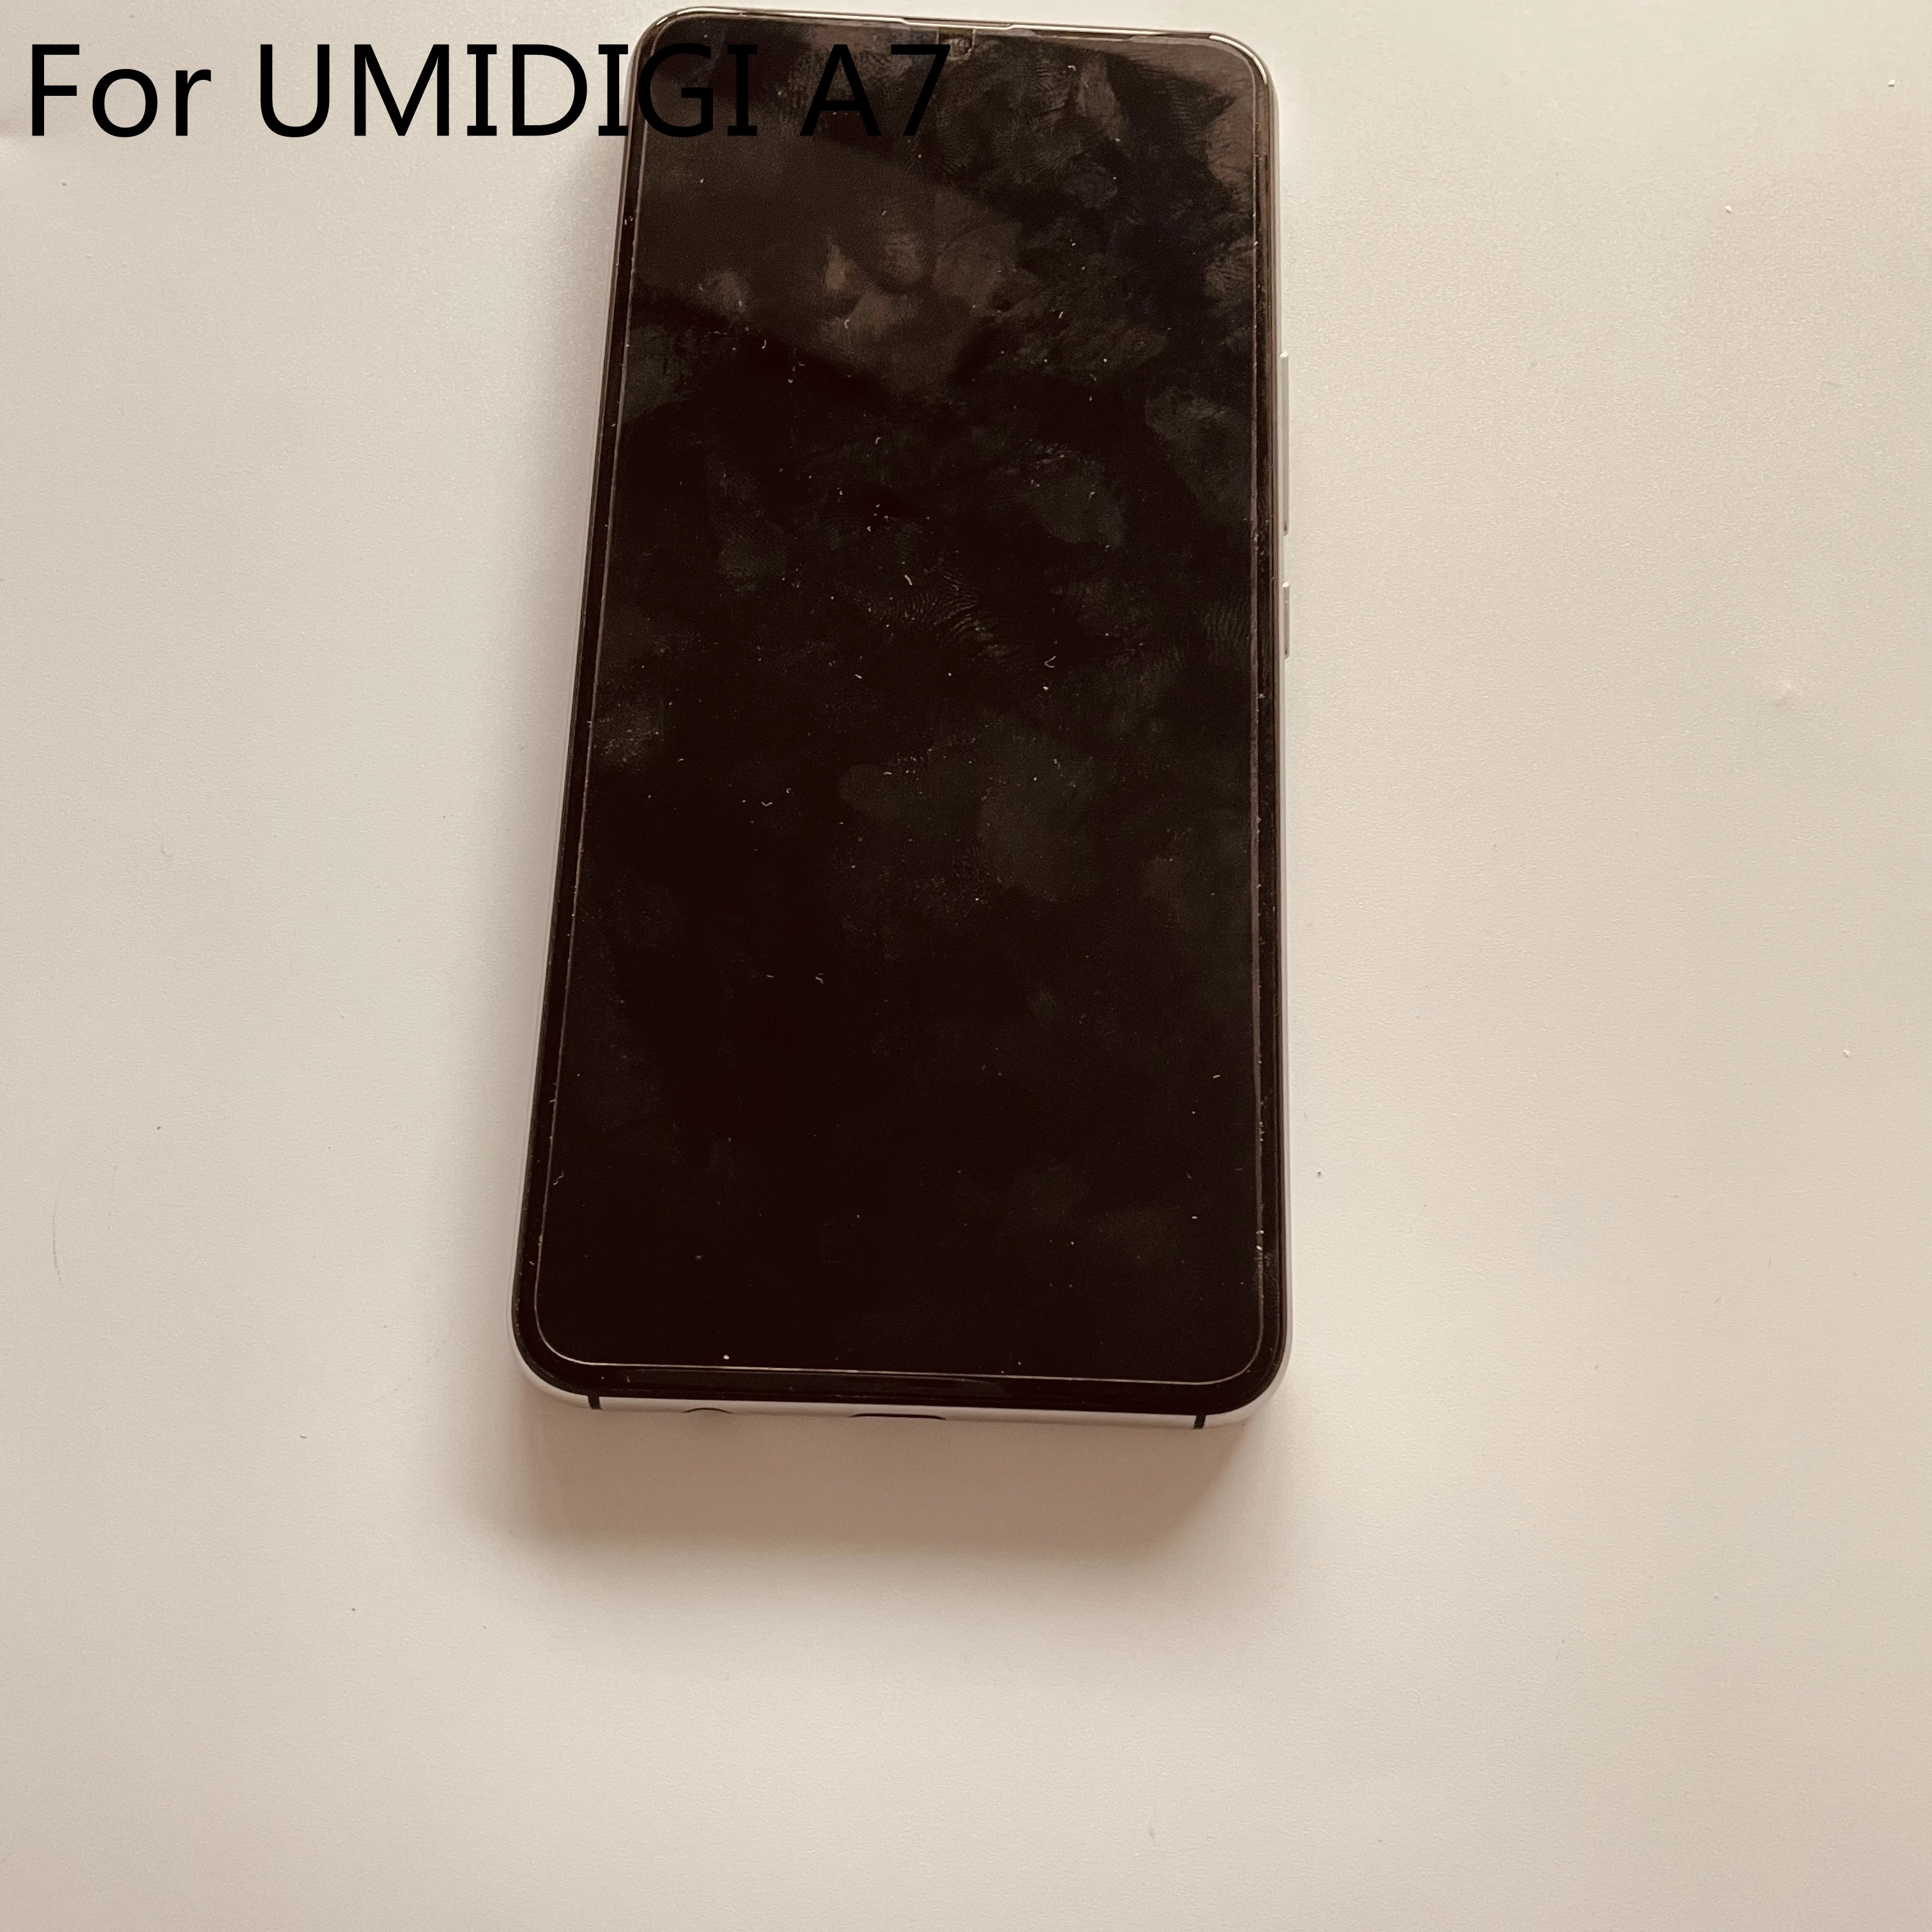 

ЖК-дисплей б/у UMIDIGI A7, экран + сенсорный экран + рамка для UMIDIGI A7 Helio P20 MT6757 6,49 ''1560x720, бесплатная доставка